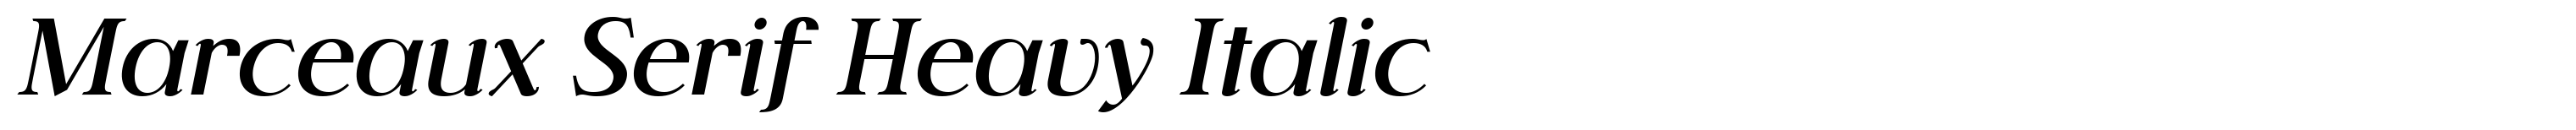 Marceaux Serif Heavy Italic